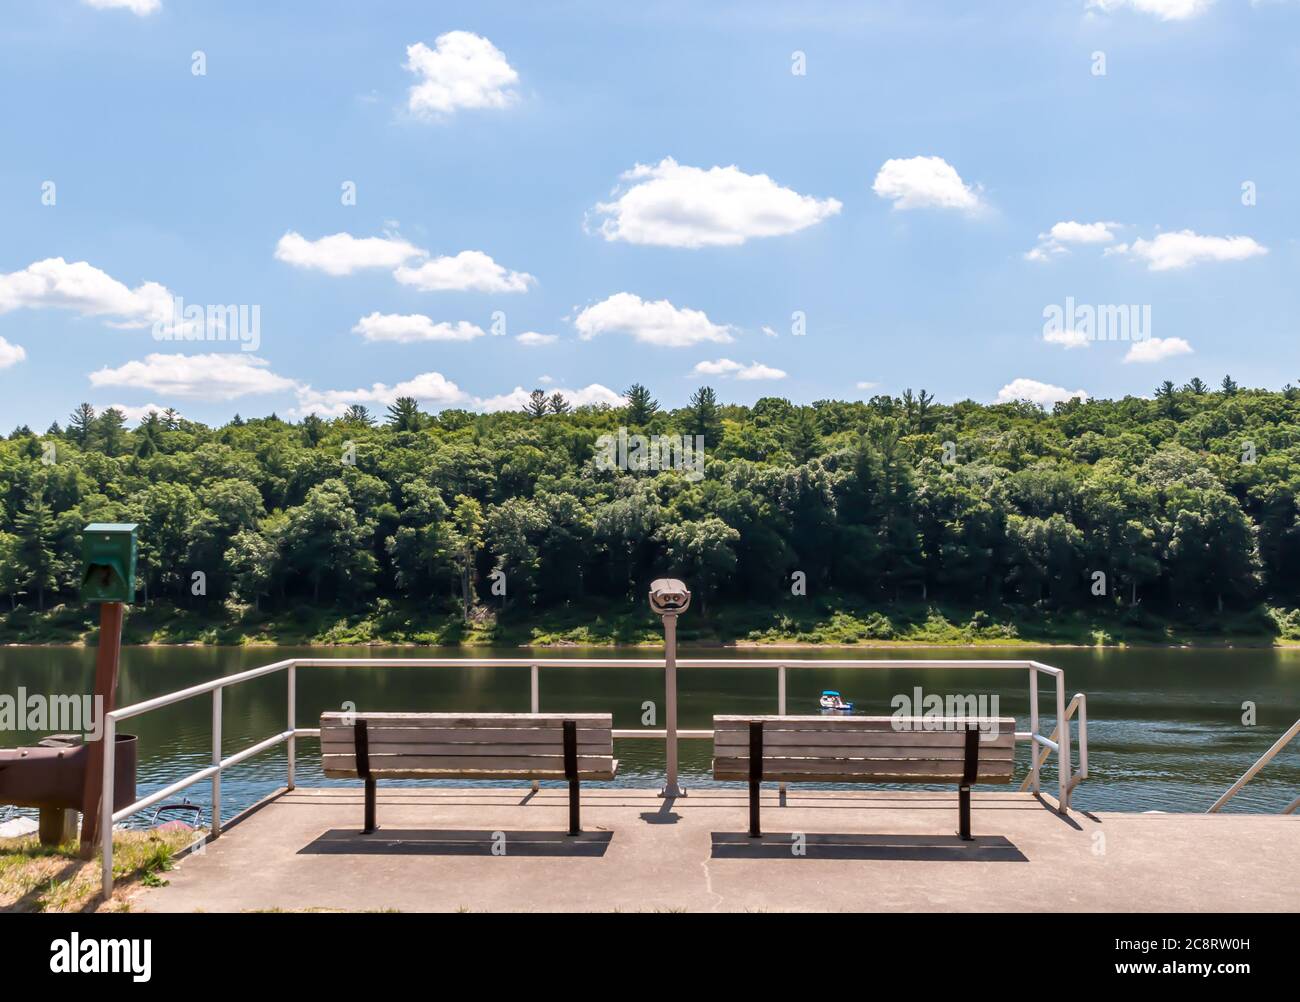 Deux bancs de parc dans un salon surplombant le lac Tionesta dans le comté de Venango, Pennsylvanie, États-Unis, par une journée d'été ensoleillée Banque D'Images